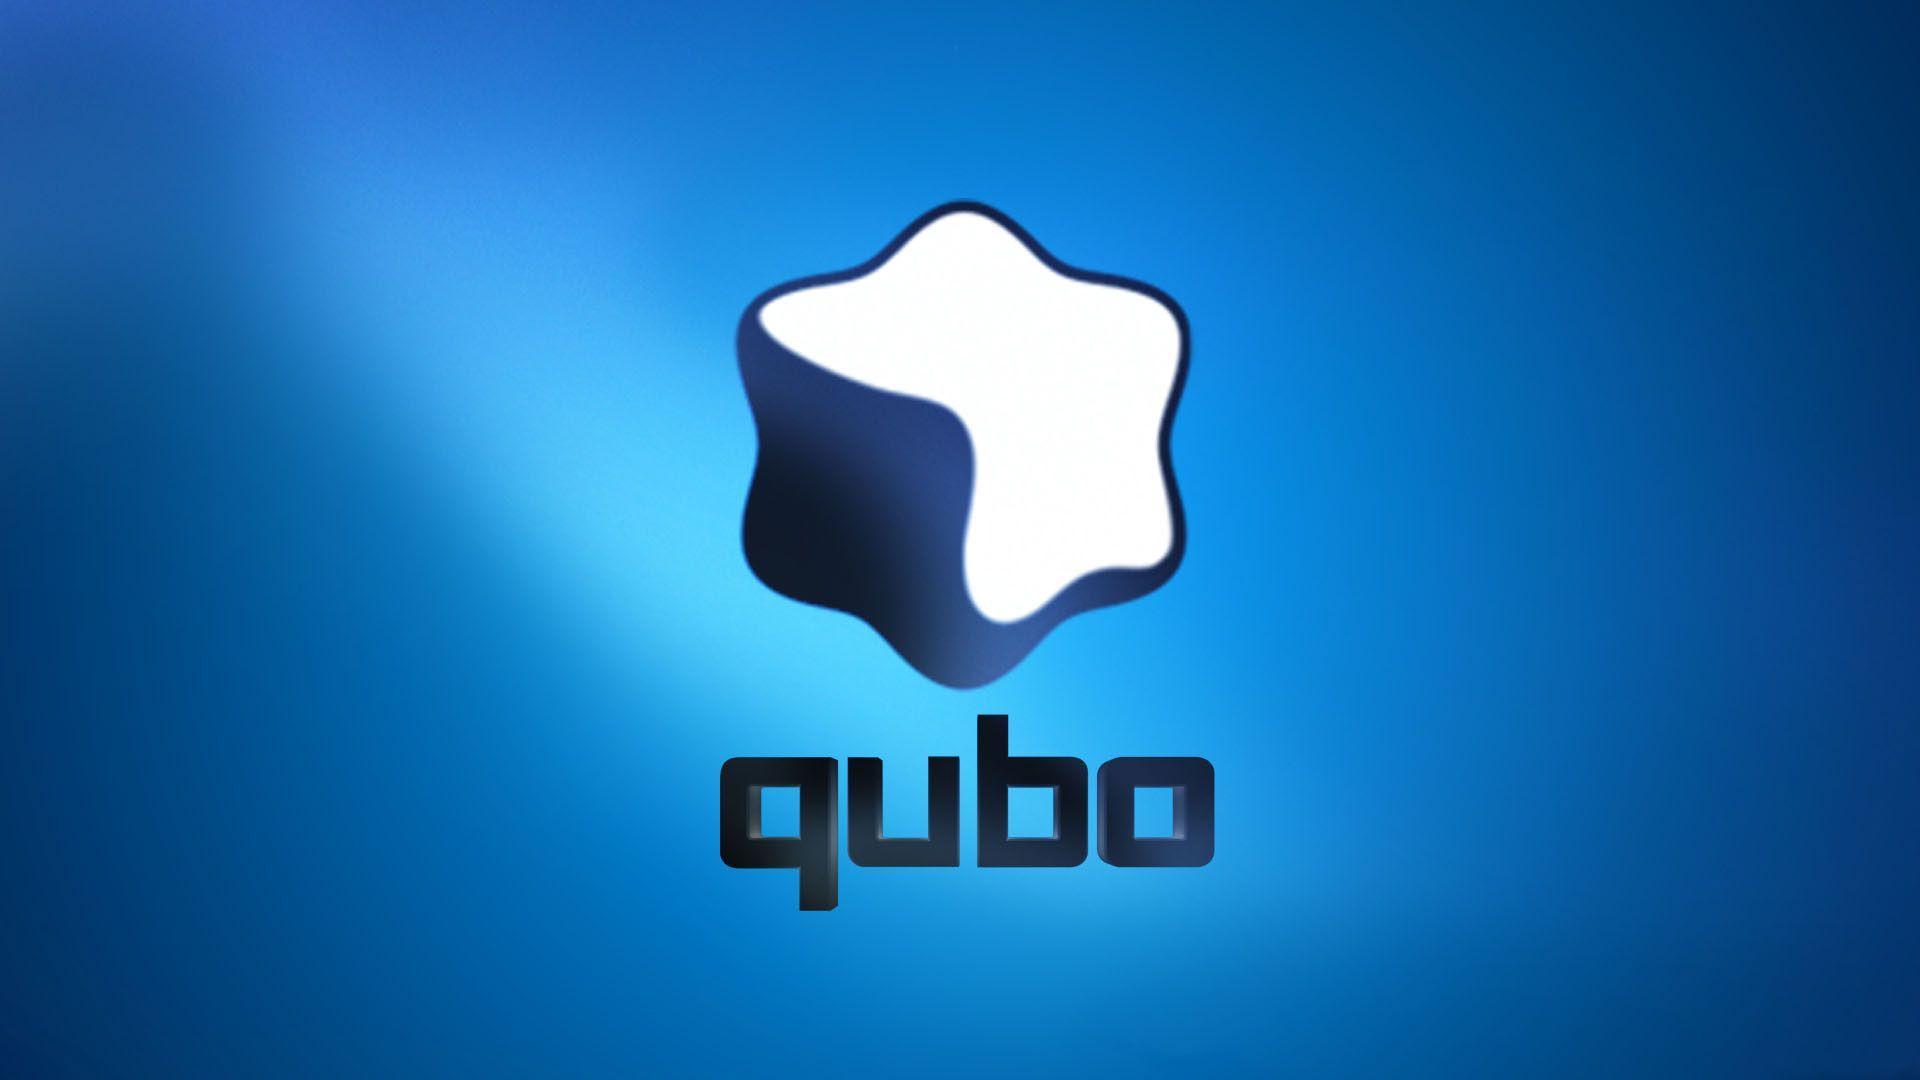 Qubo Logo - Qubo